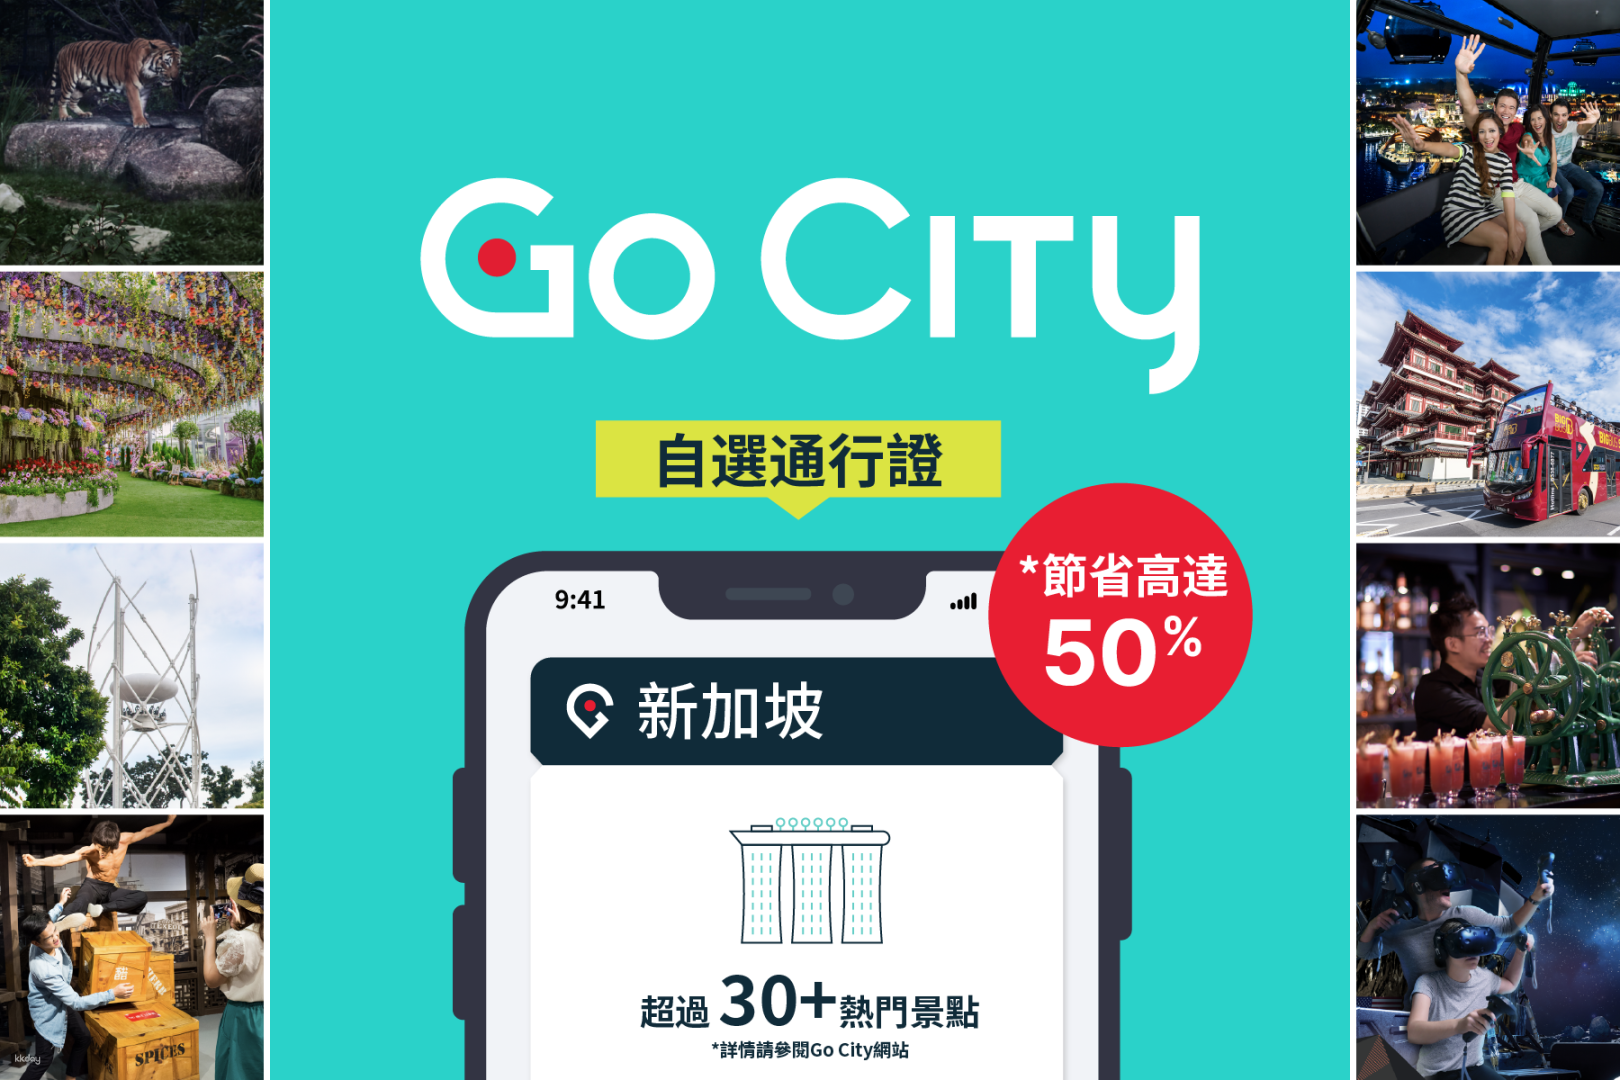 【新加坡】Go City: 新加坡探索者通行證（包括濱海灣花園和新加坡動物園入場）